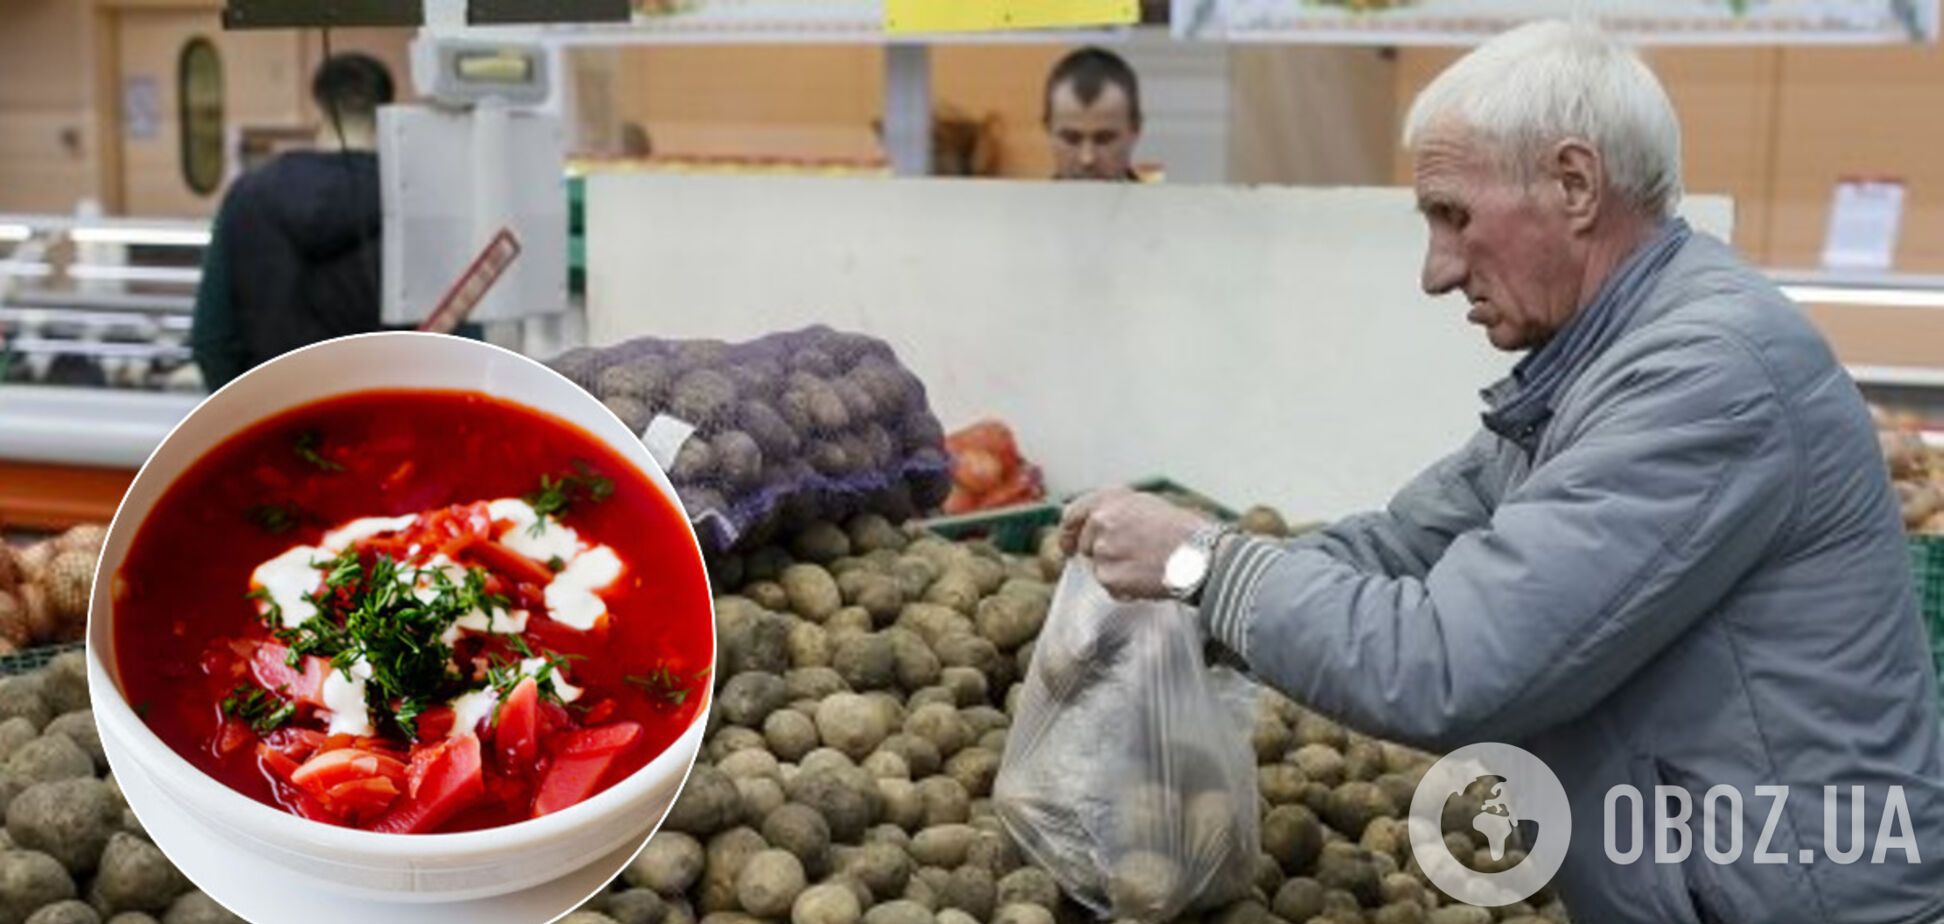 В Україну завезли 'технічну картоплю': чи безпечно її їсти